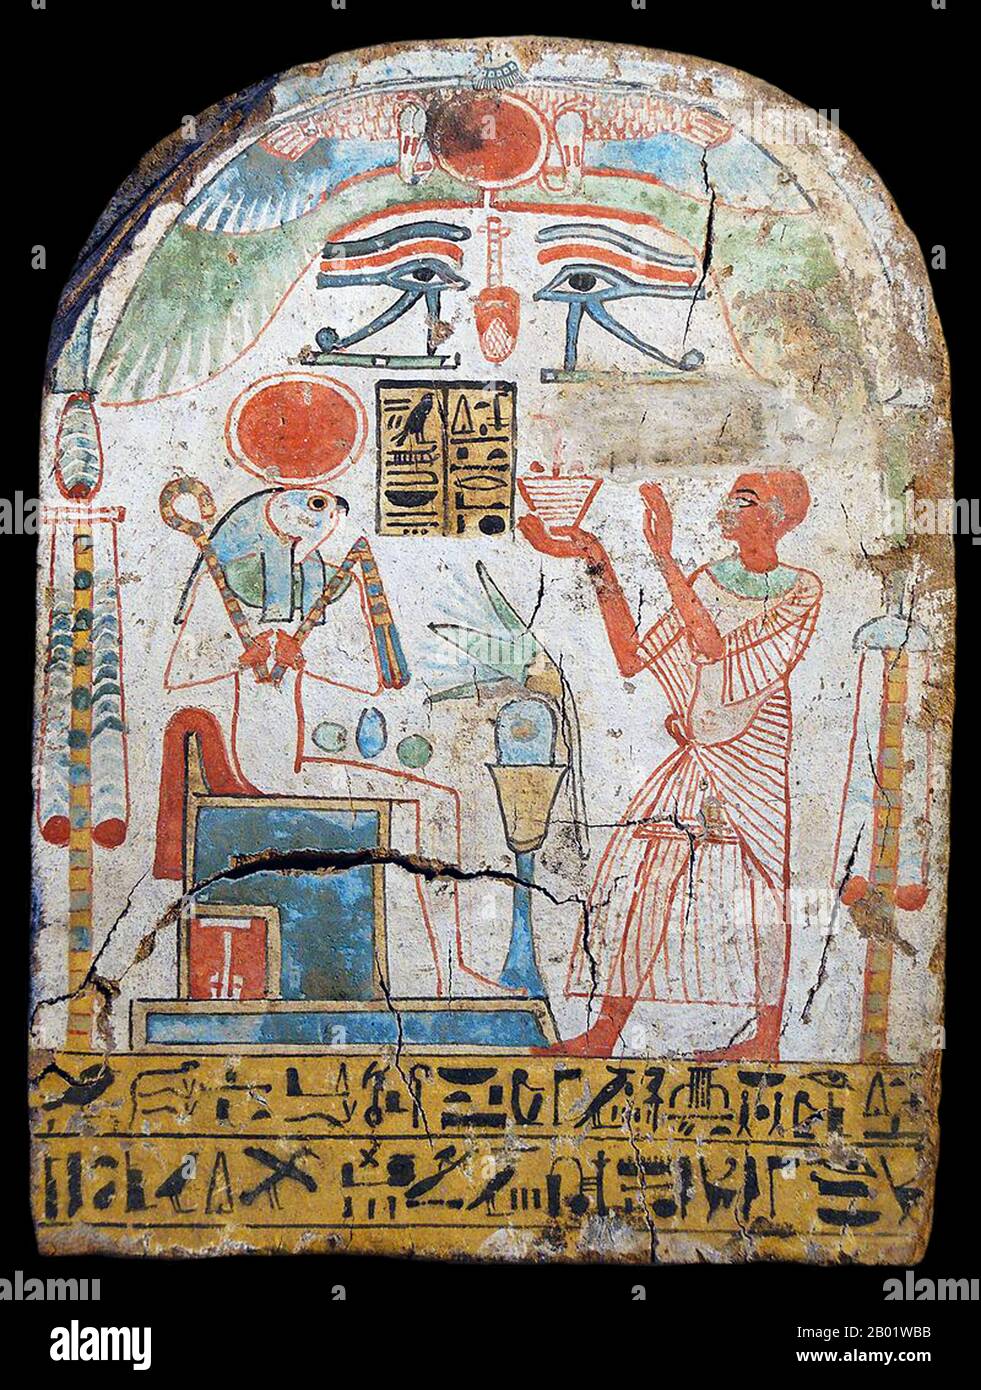 Egitto: Stele del sacerdote Padiuiset che offre incenso al dio Ra-Horakhty-Atum. Legno dipinto, XXII dinastia, 900 a.C. Nella successiva mitologia egizia, Ra-Horakhty era più un titolo o una manifestazione che una divinità composita. Può essere tradotto come "Ra (chi è) Horus of the Horizons". Ra-Horakhty doveva collegare Horakhty (come aspetto orientato all'alba di Horus) a Ra. È stato suggerito che Ra-Horakhty si riferisca semplicemente al viaggio del sole dall'orizzonte all'orizzonte come Ra, o che significhi mostrare Ra come una divinità simbolica di speranza e rinascita. Foto Stock